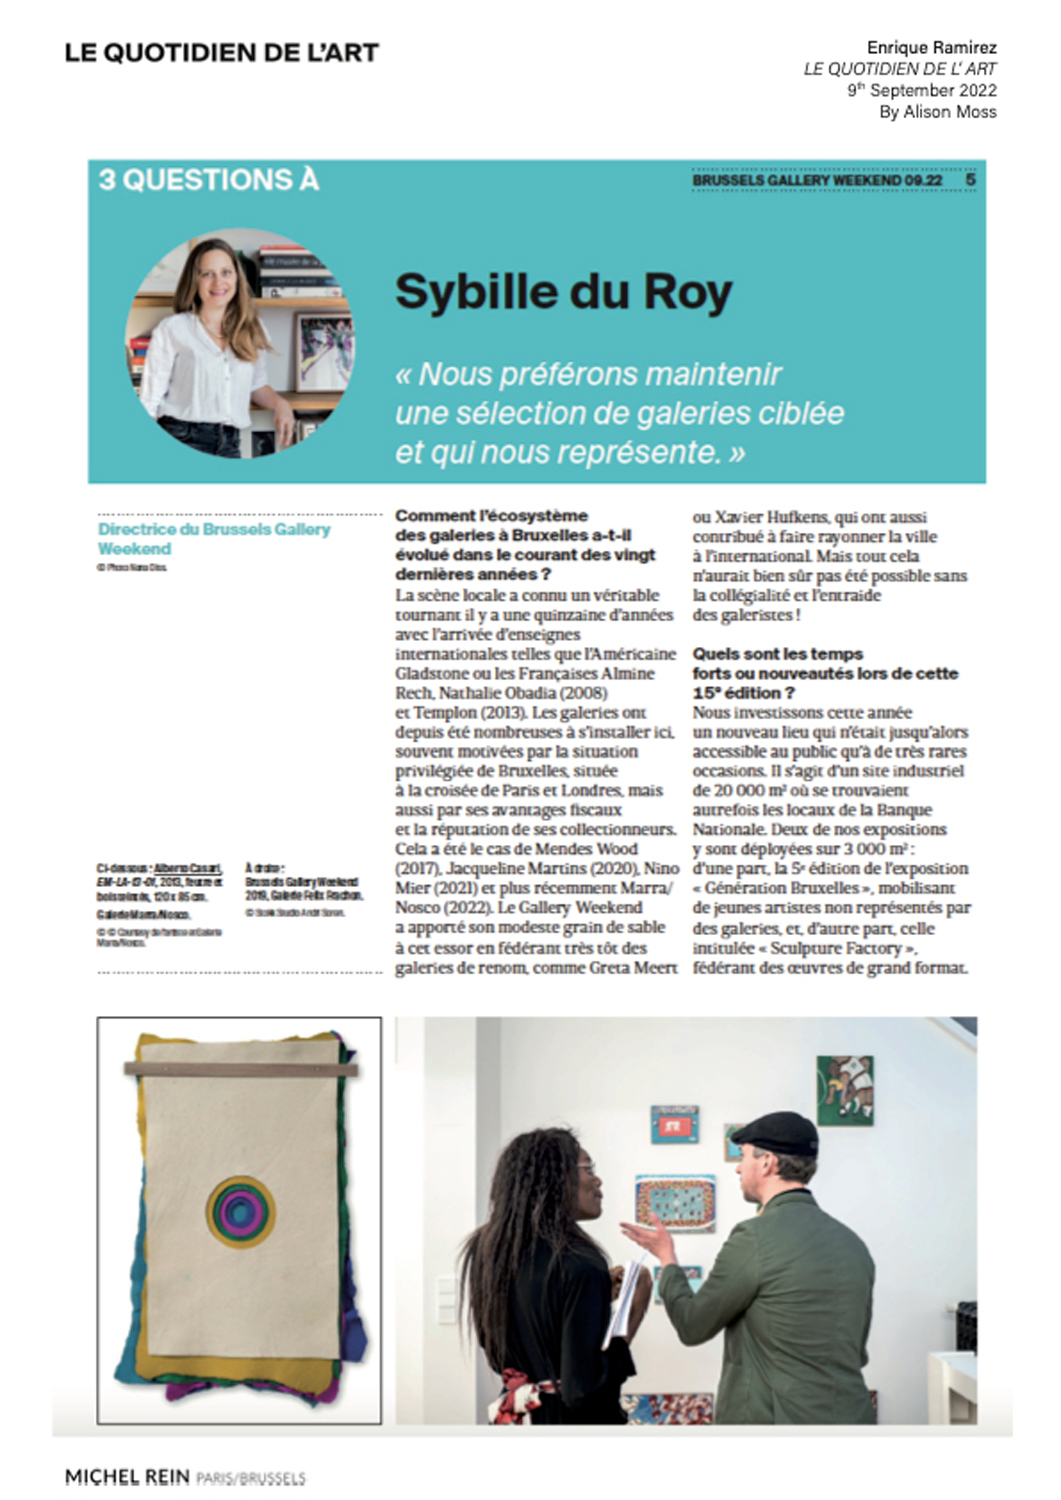 3 questions  Sybille du Roy - Quotidien de l'art